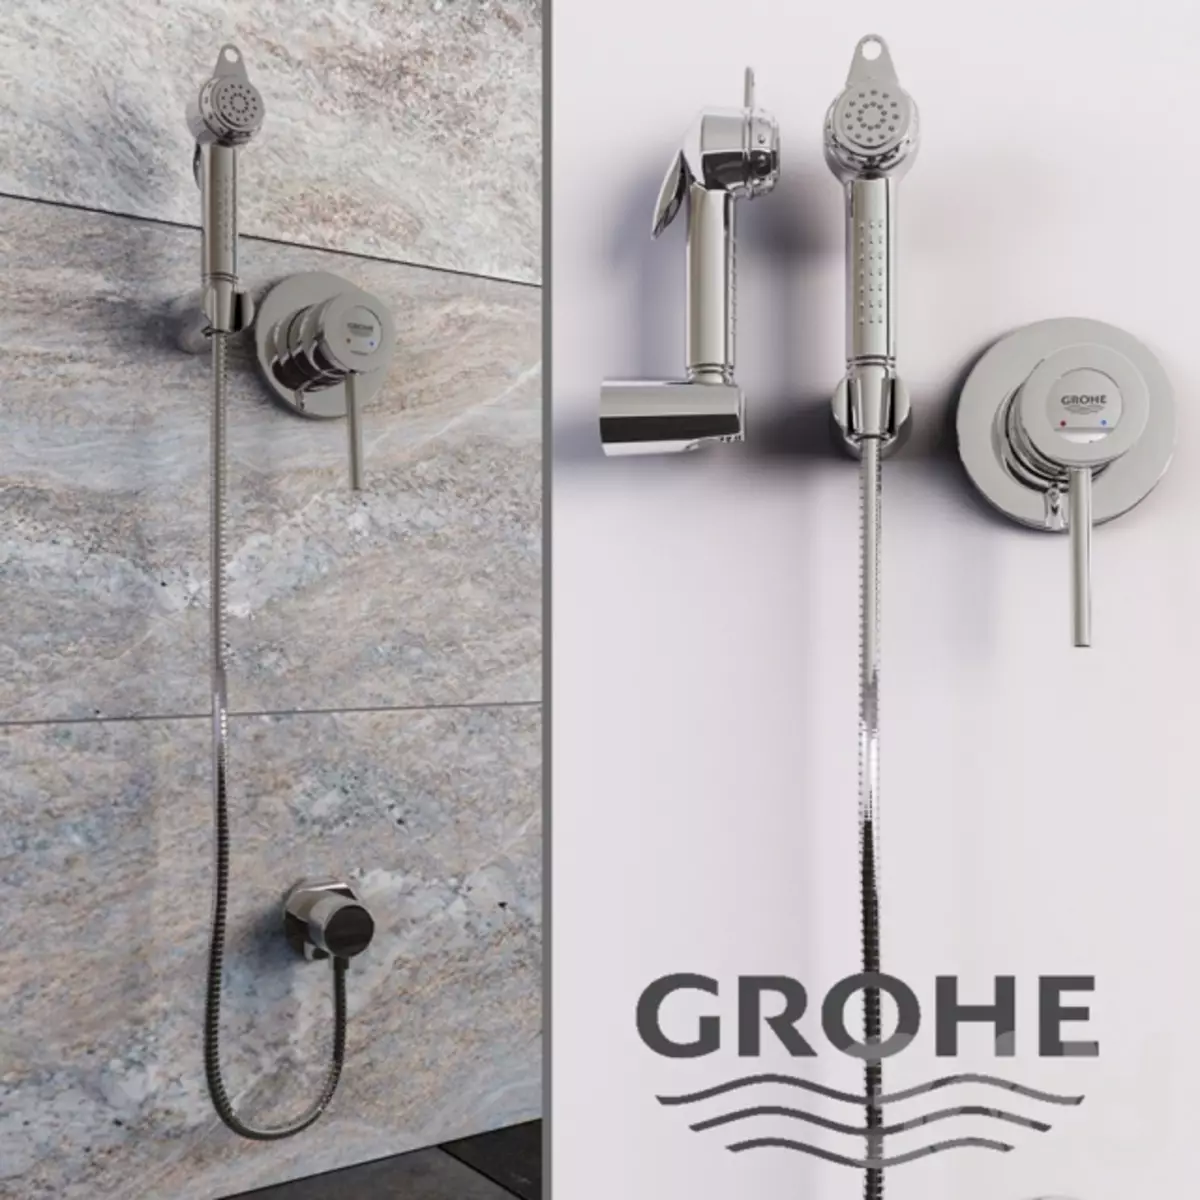 Hygienická sprcha GROHE: Súprava s miešačkami a vodopádmi, Bauflow a Baucurve Review, modely s hadicou a termostatom 10468_10